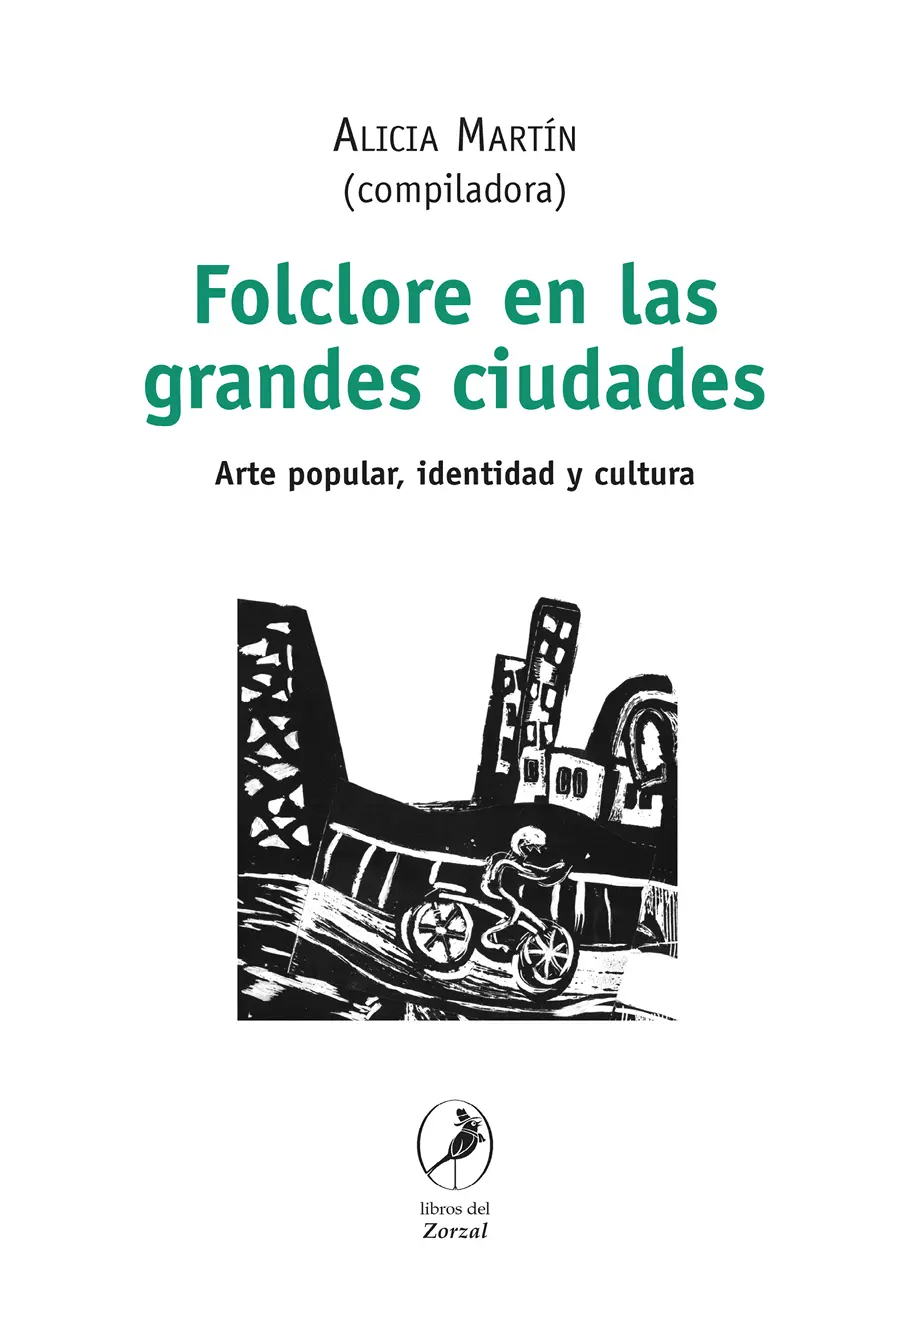 Alicia Martín Compiladora Folclore en las grandes ciudades Arte popular - фото 1